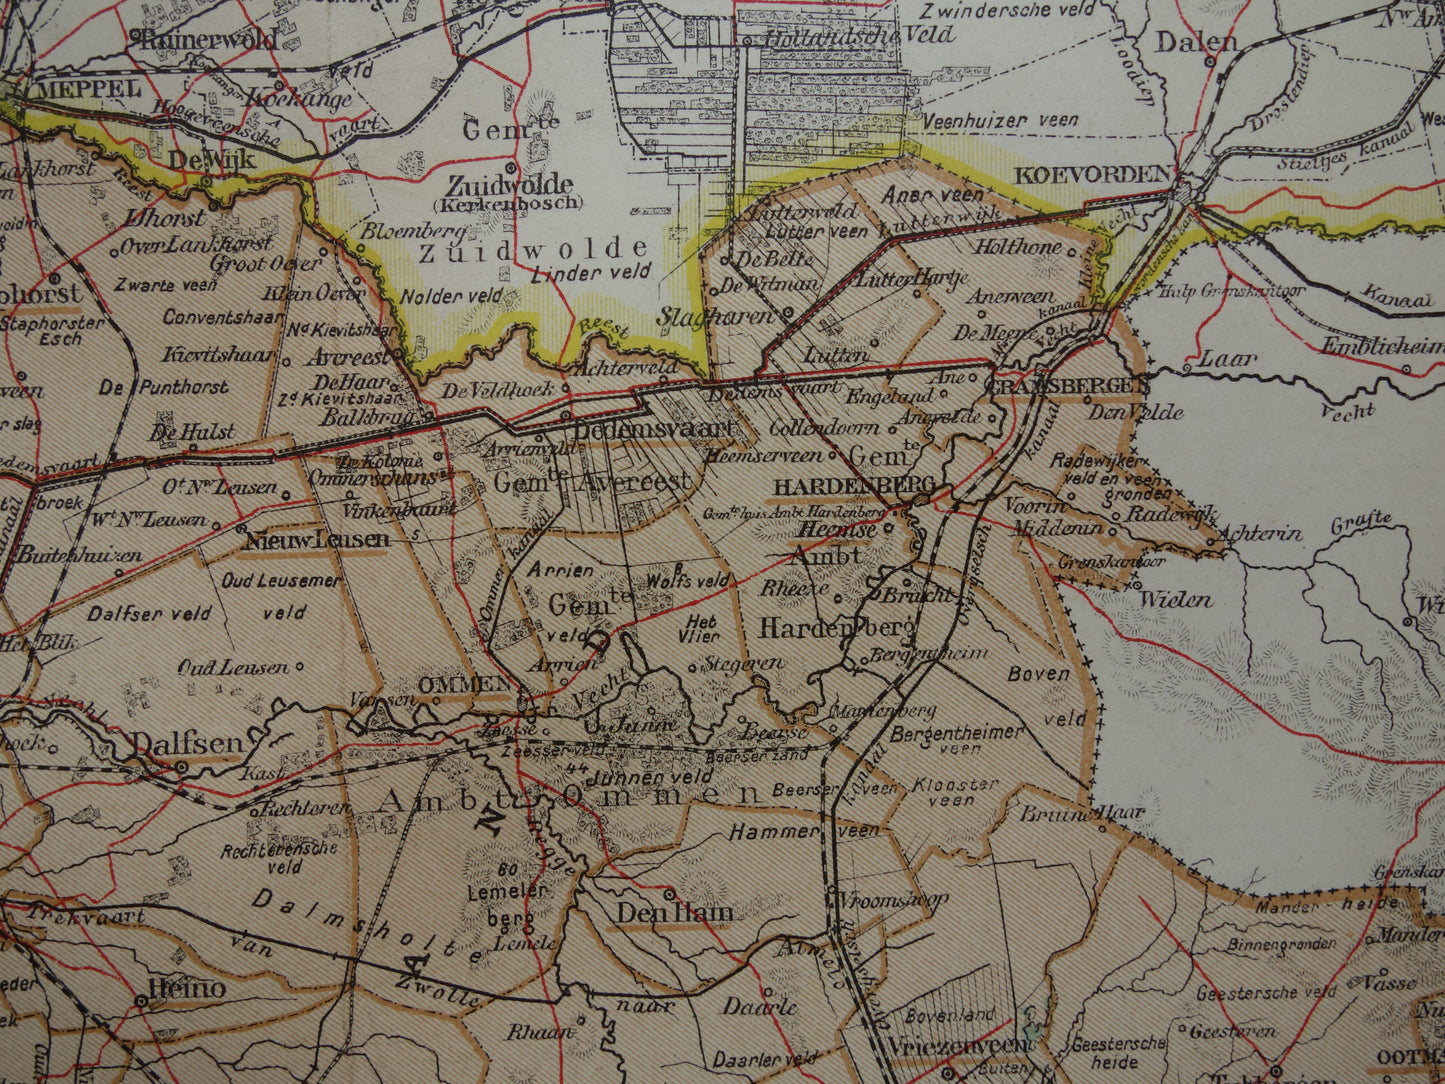 Overijssel Oude landkaart van de provincie Overijssel uit 1910 originele antieke kaart Deventer Zwolle